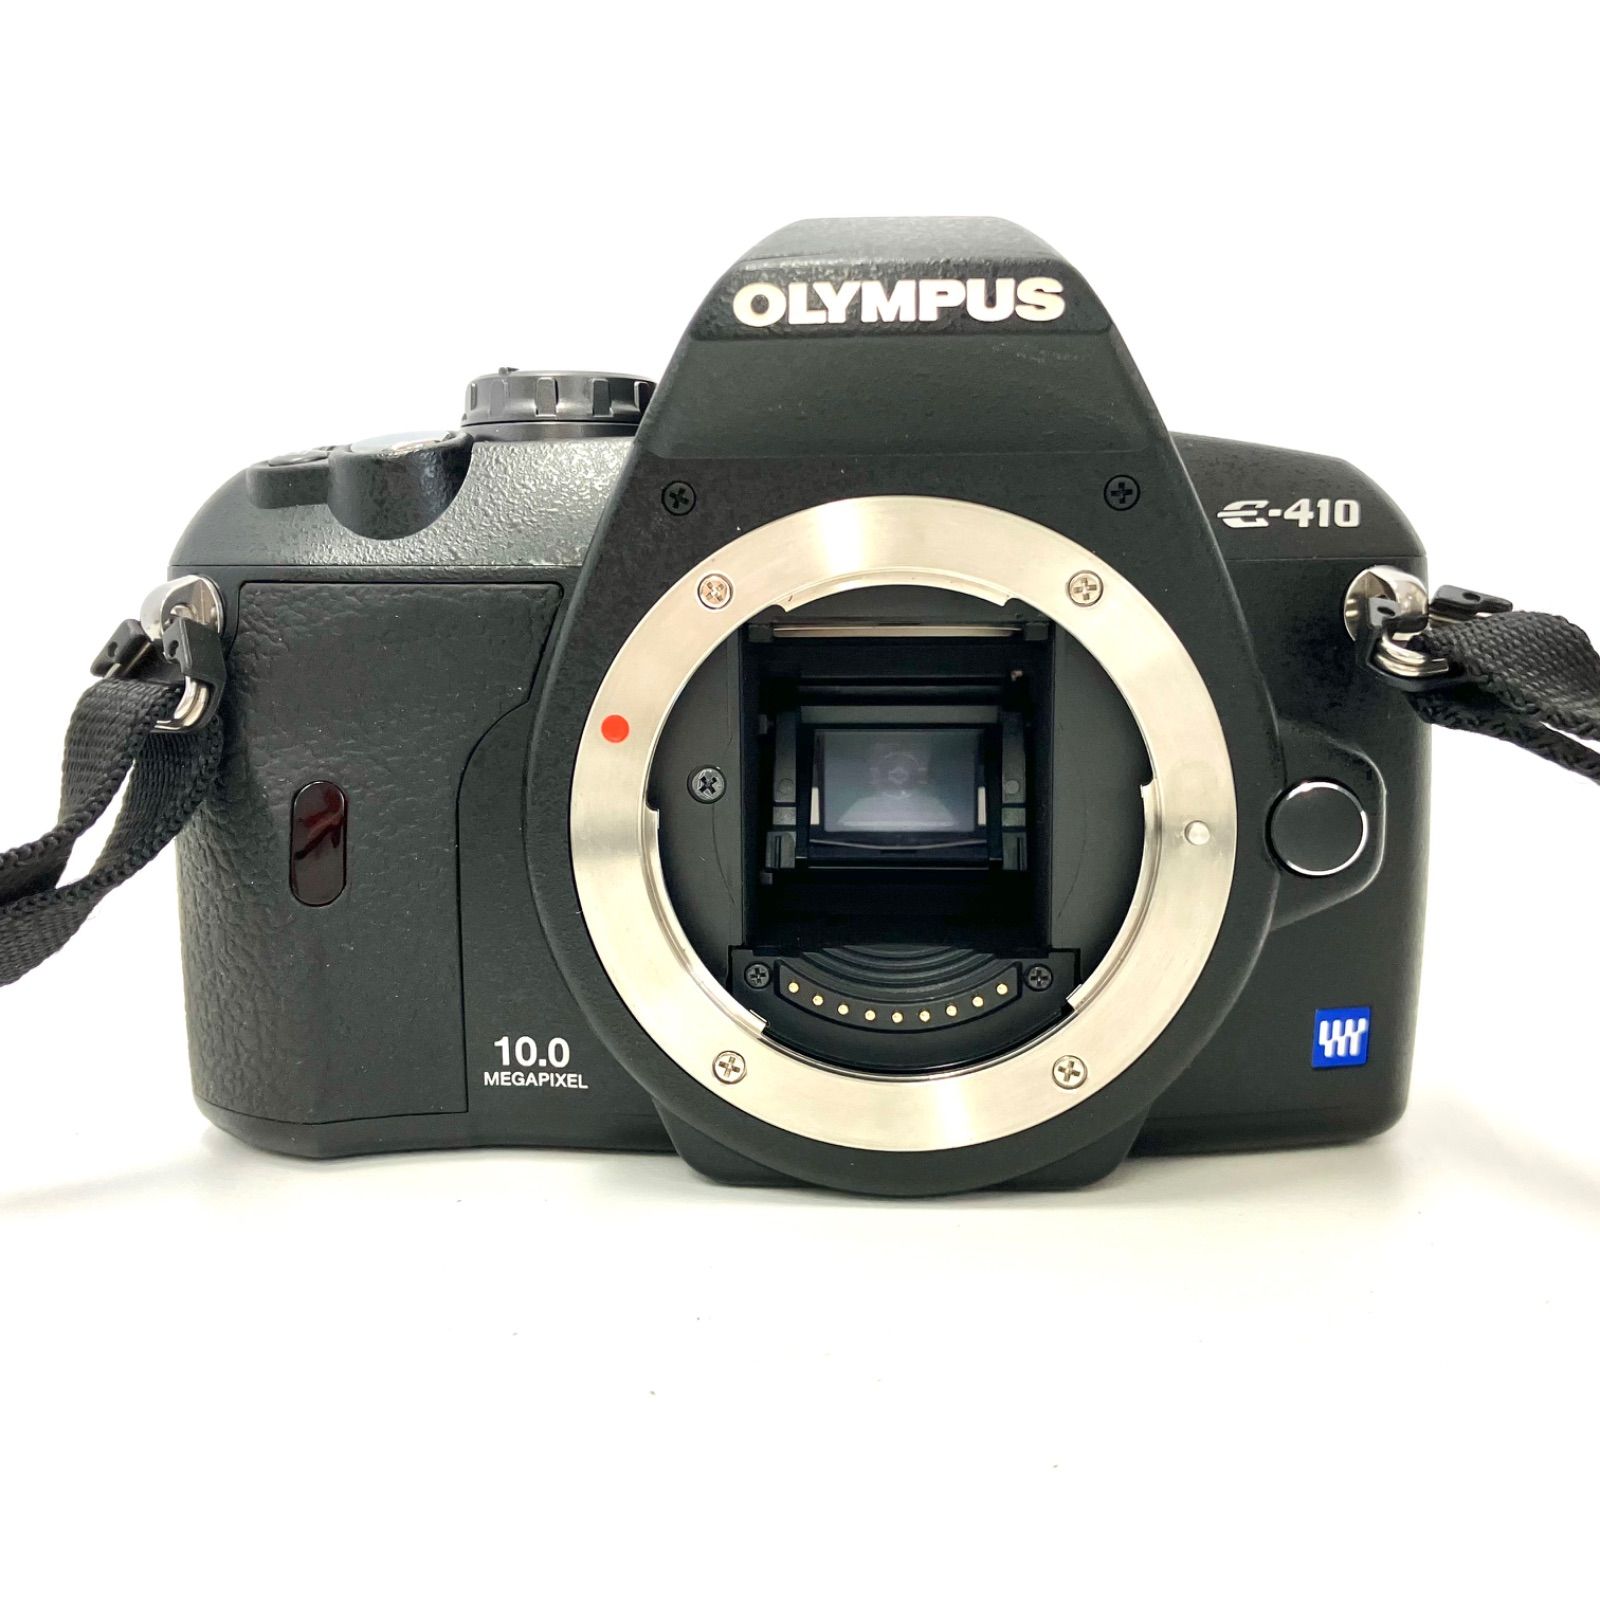 一眼レフカメラ オリンパス E-410 - デジタルカメラ